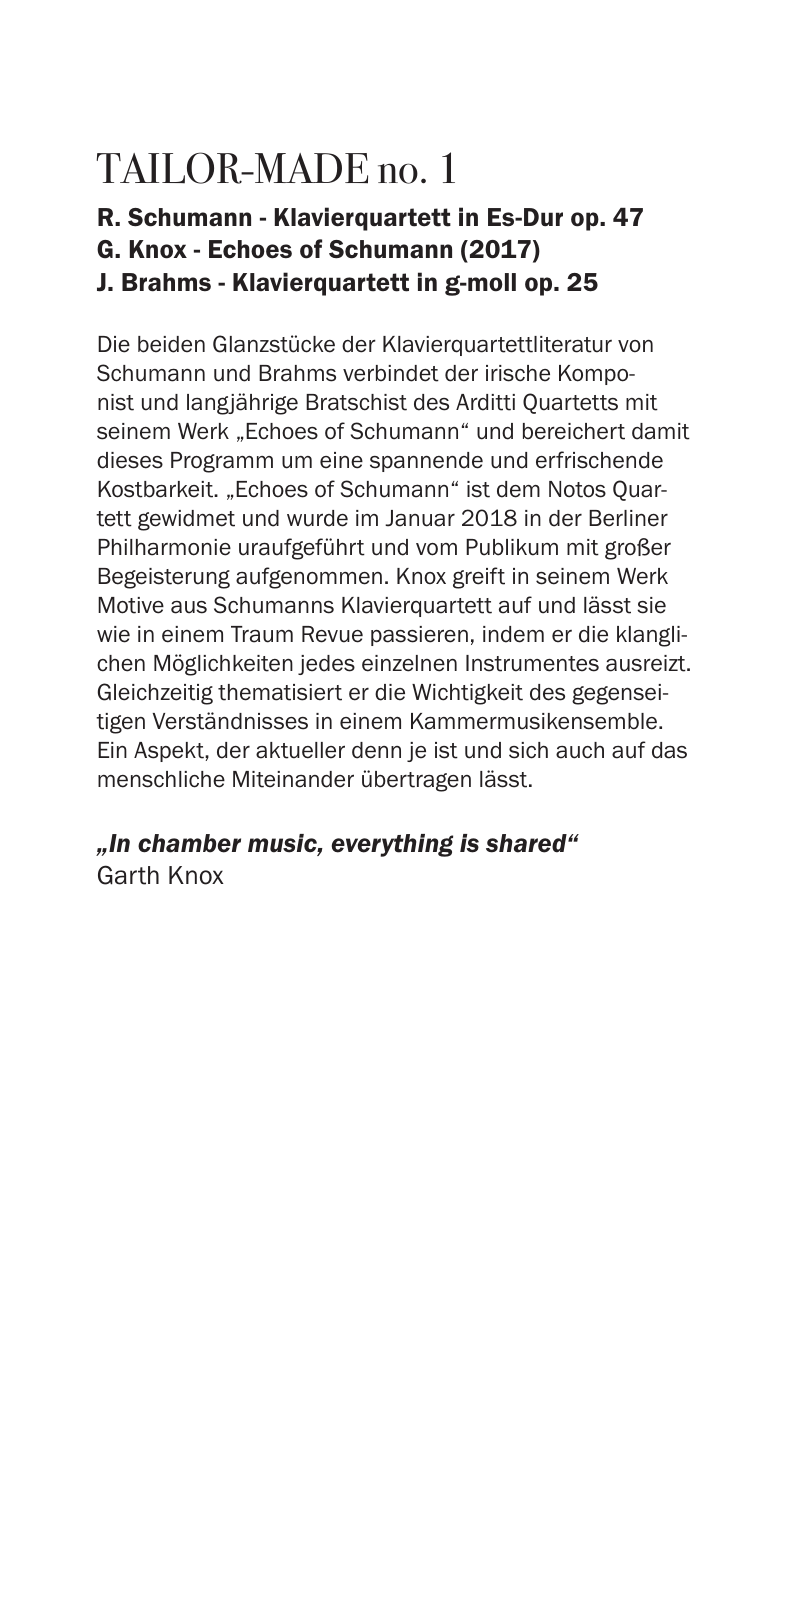 Vorschau Notos Quartett Programme 18/19/20 Seite 7